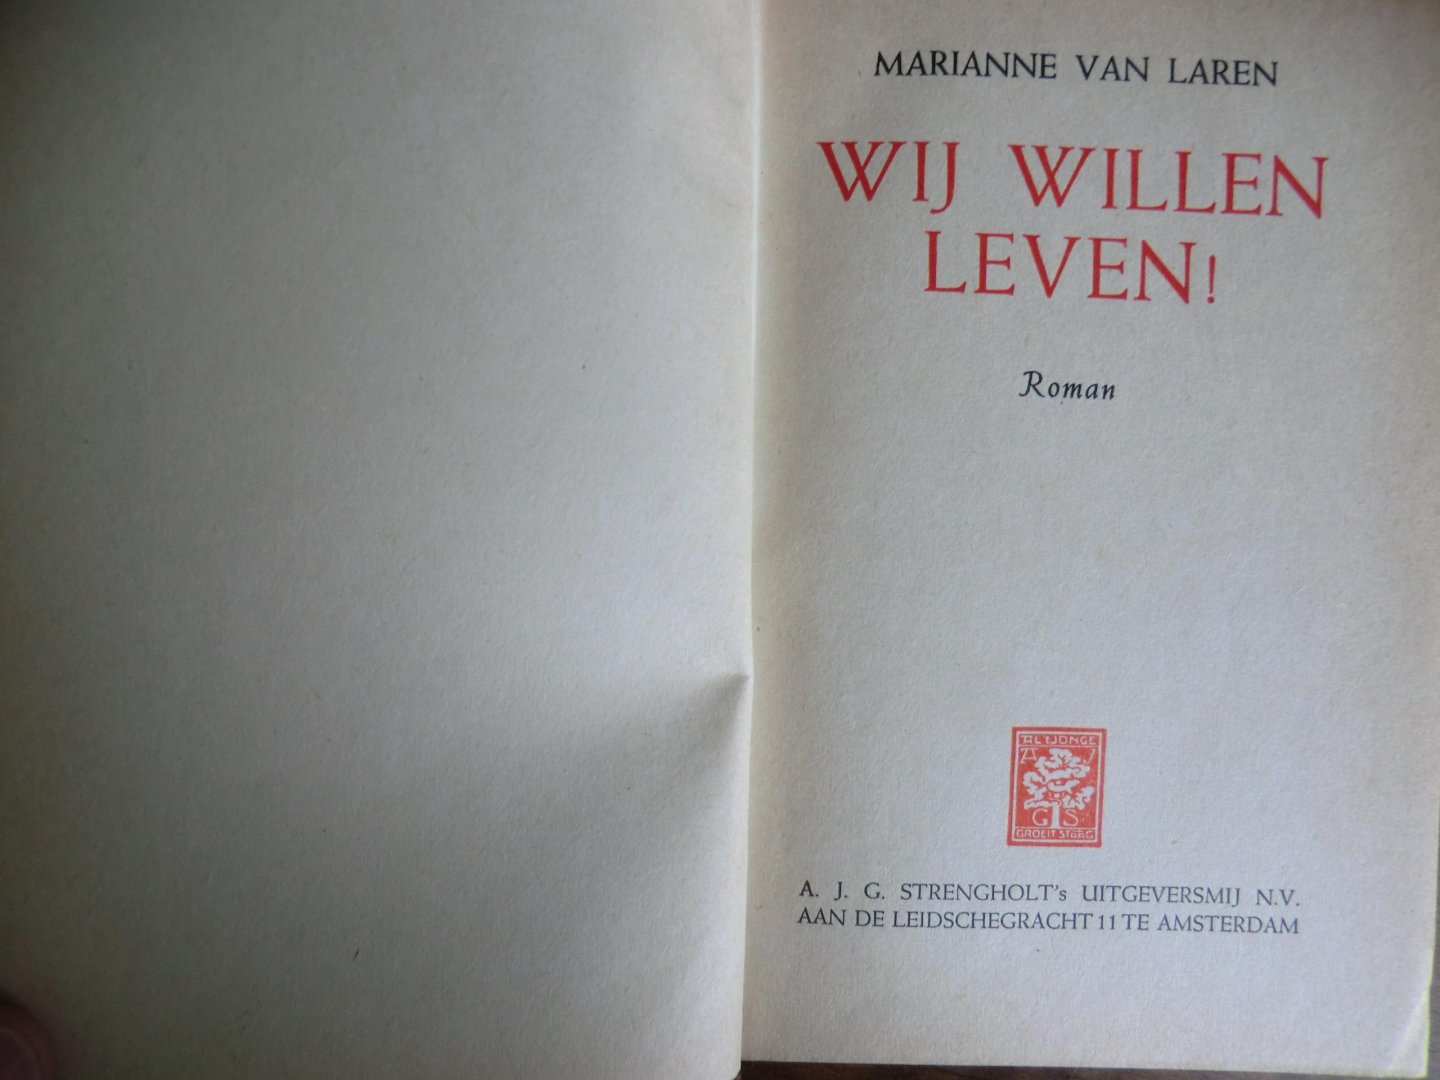 Marianne van Laren - WIJ WILLEN LEVEN